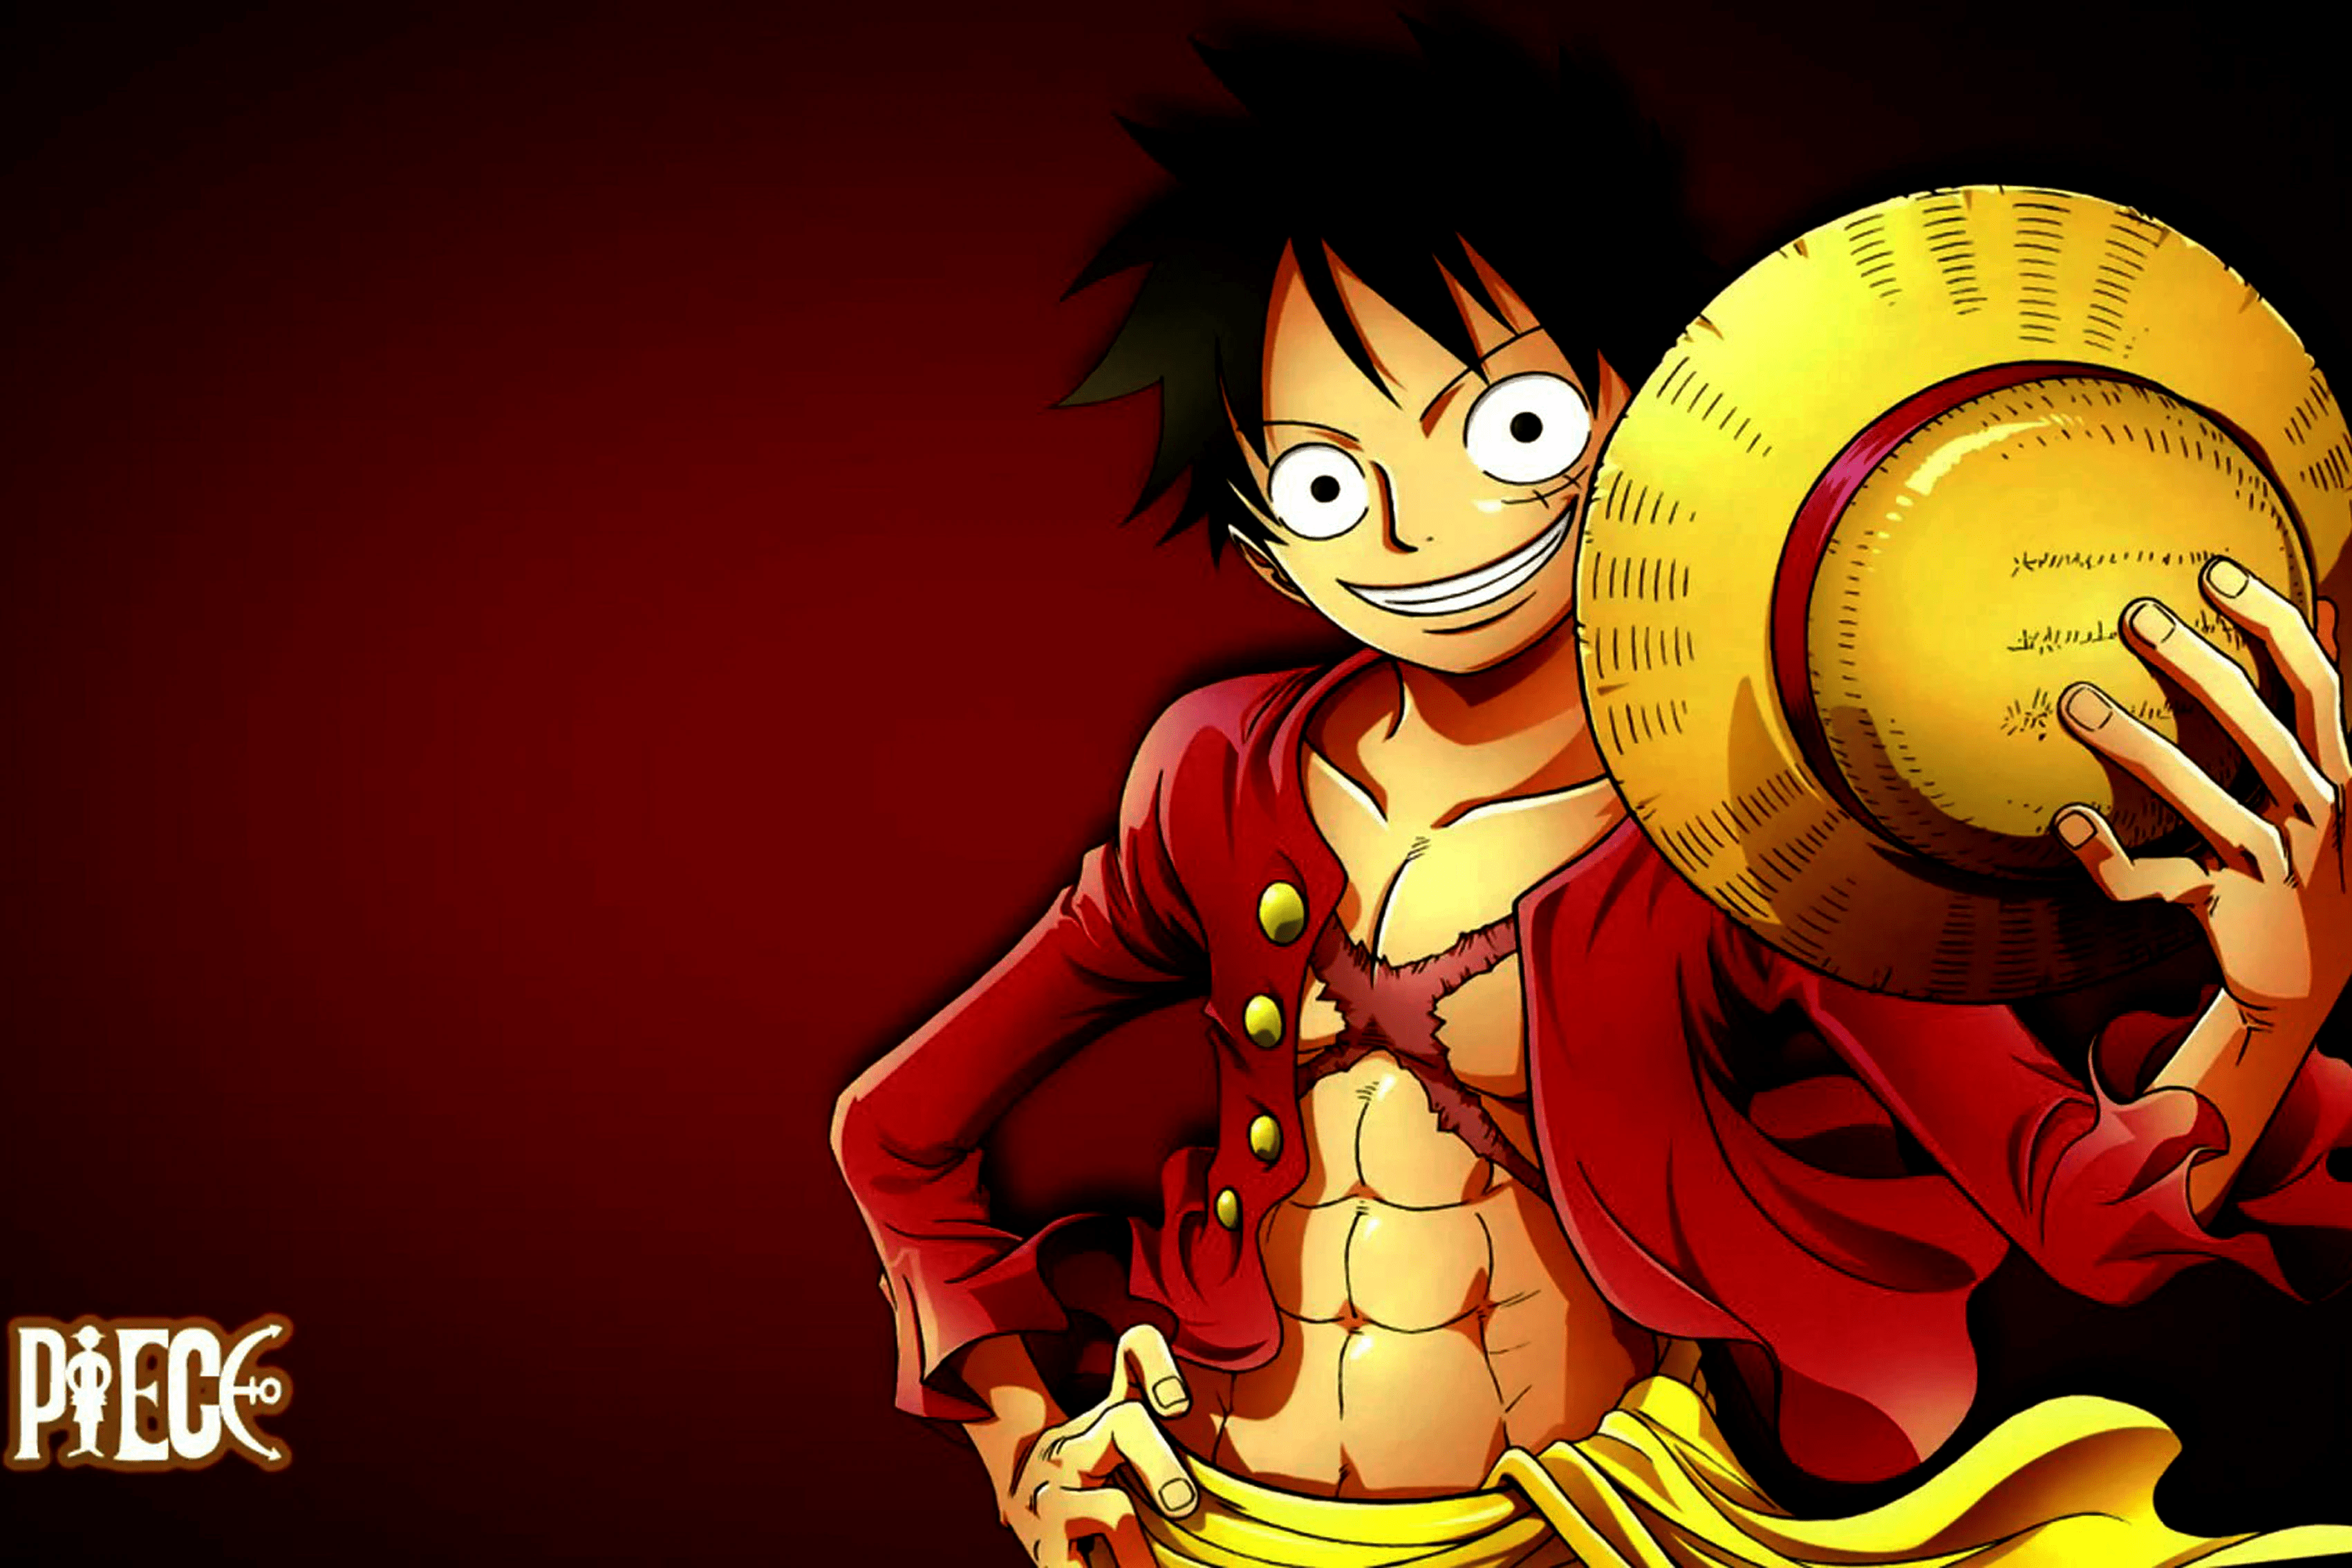 Qual personagem de One Piece é o seu favorito? - Quora